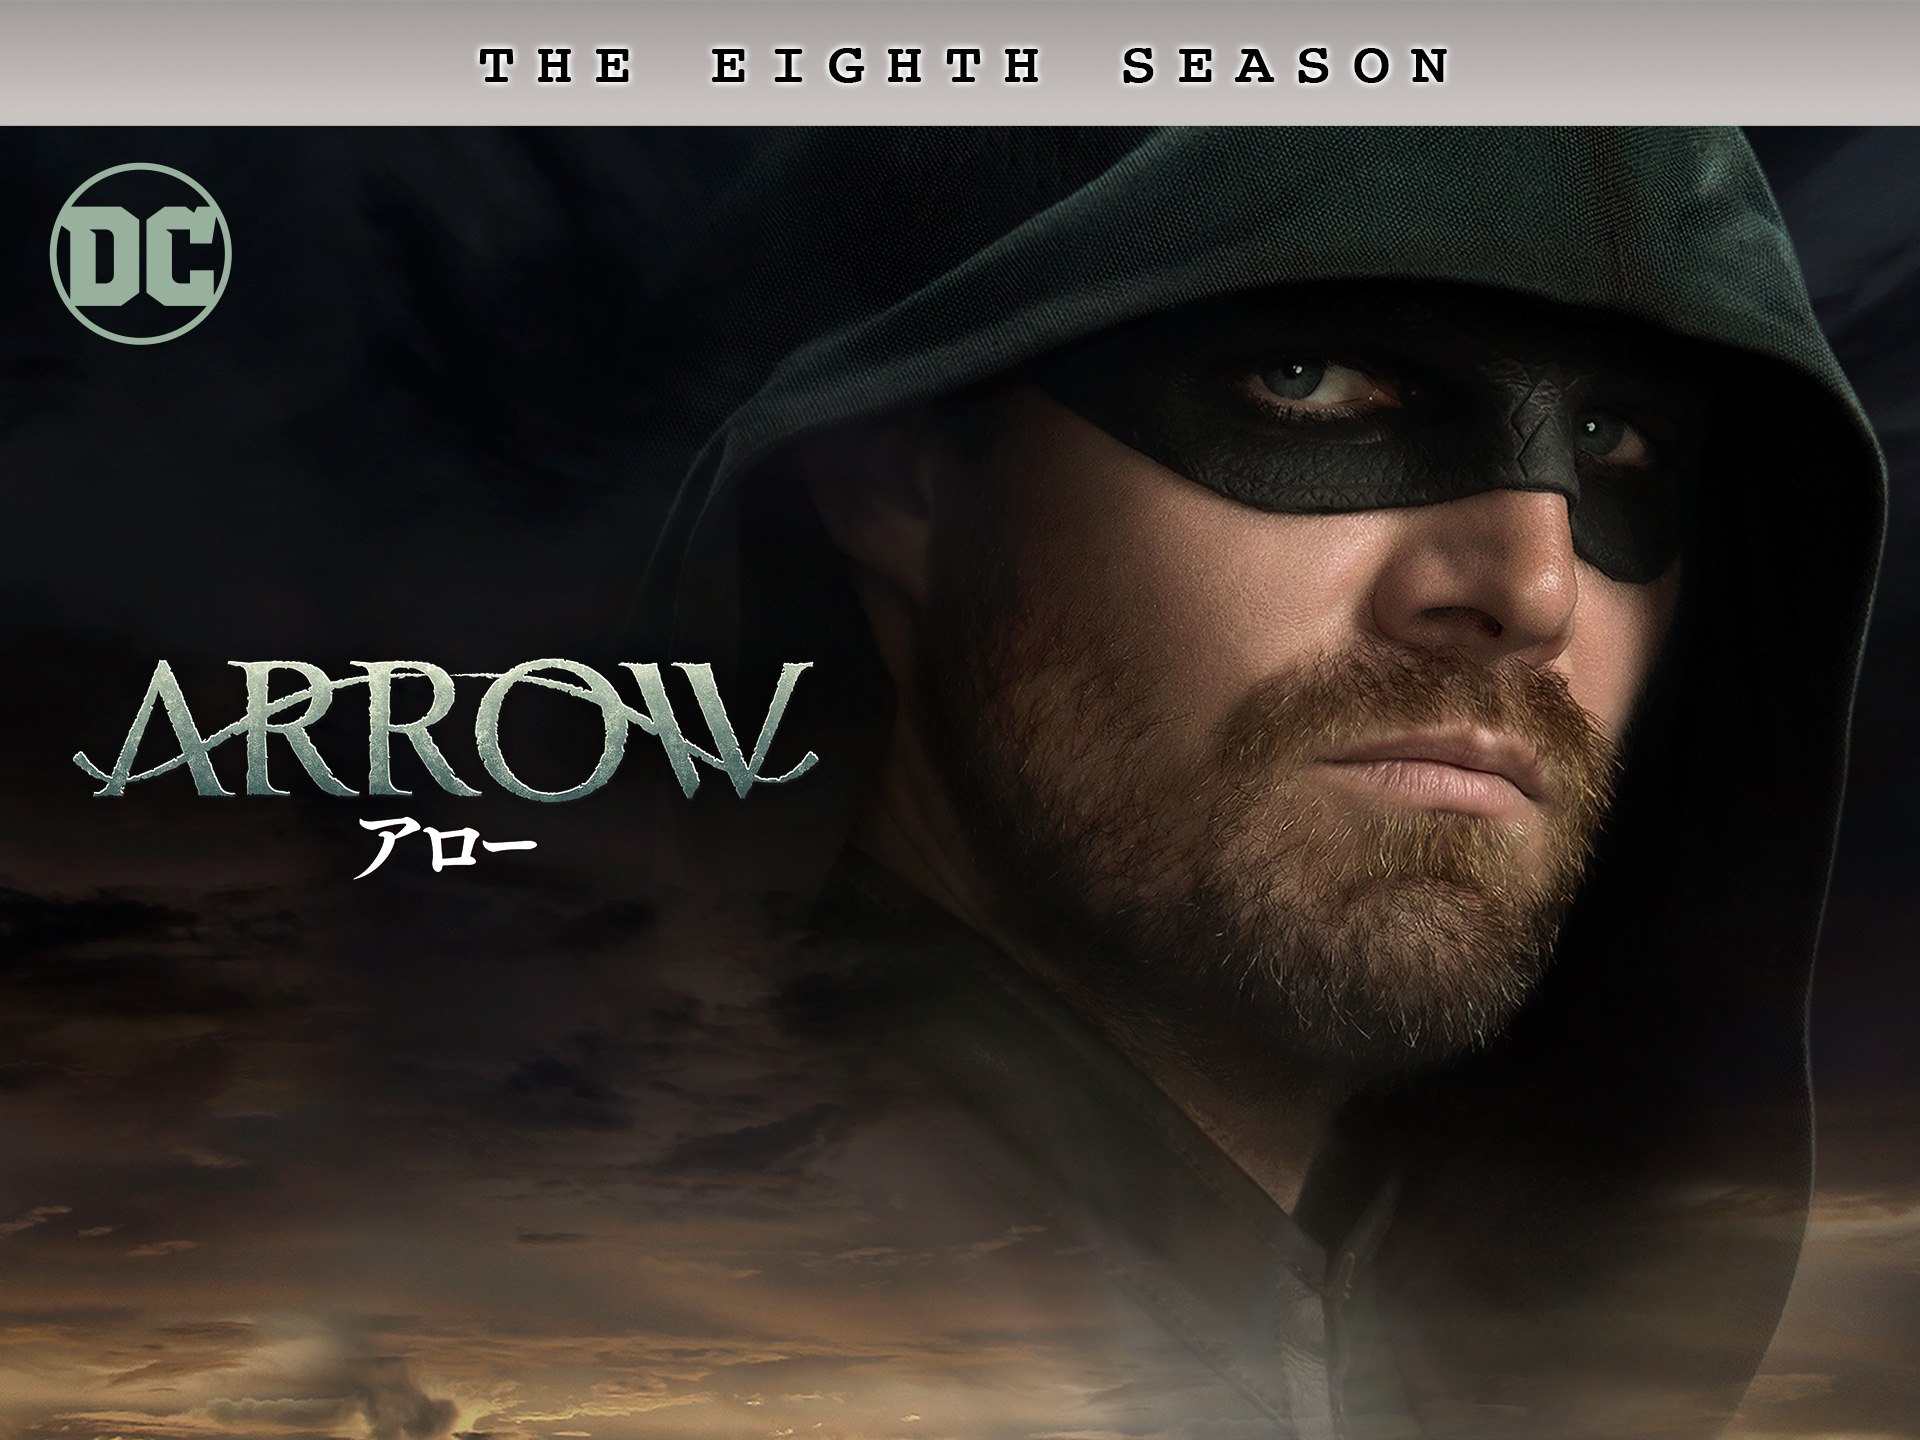 Arrow アロー ファイナル シーズン 第1話 第10話のまとめフル動画 初月無料 動画配信サービスのビデオマーケット